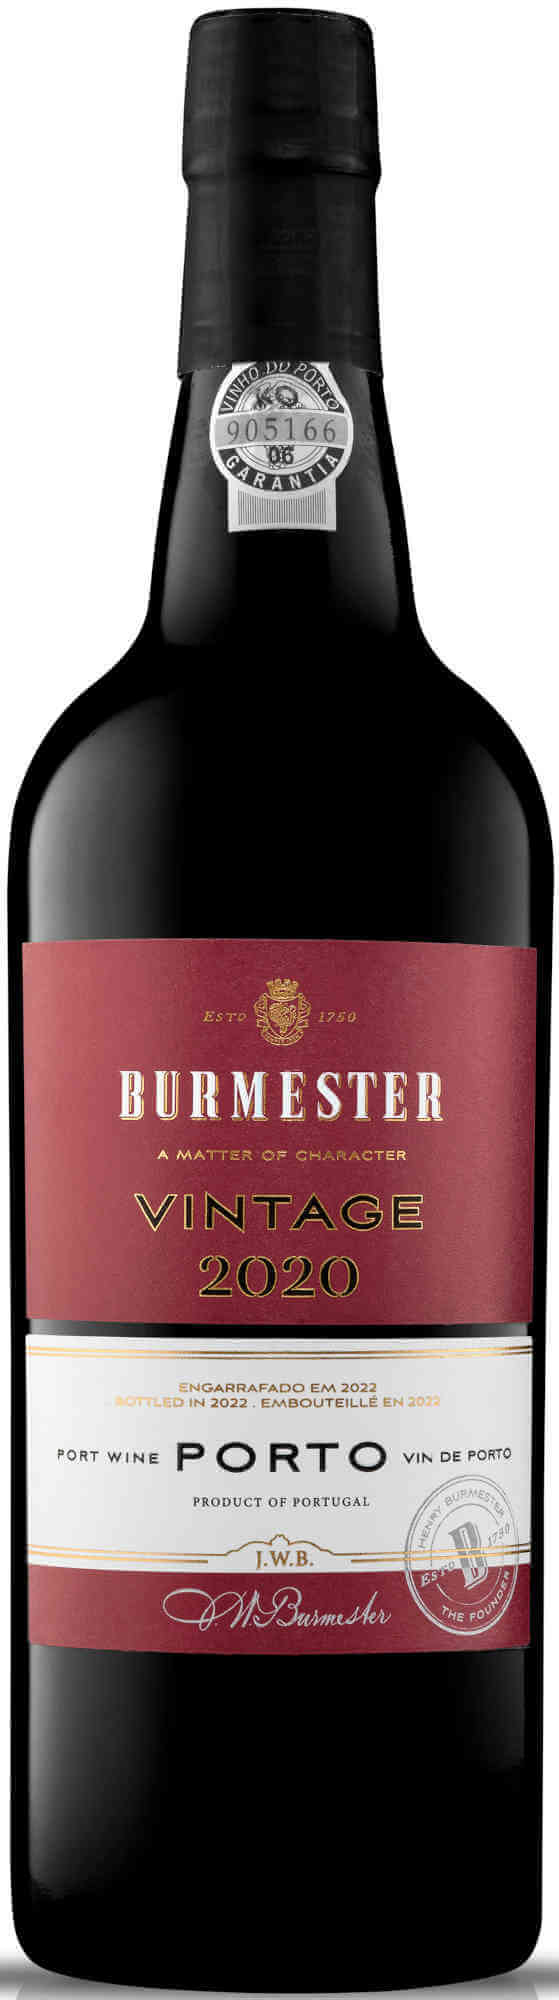 Burmester-Vintage-Port-2020